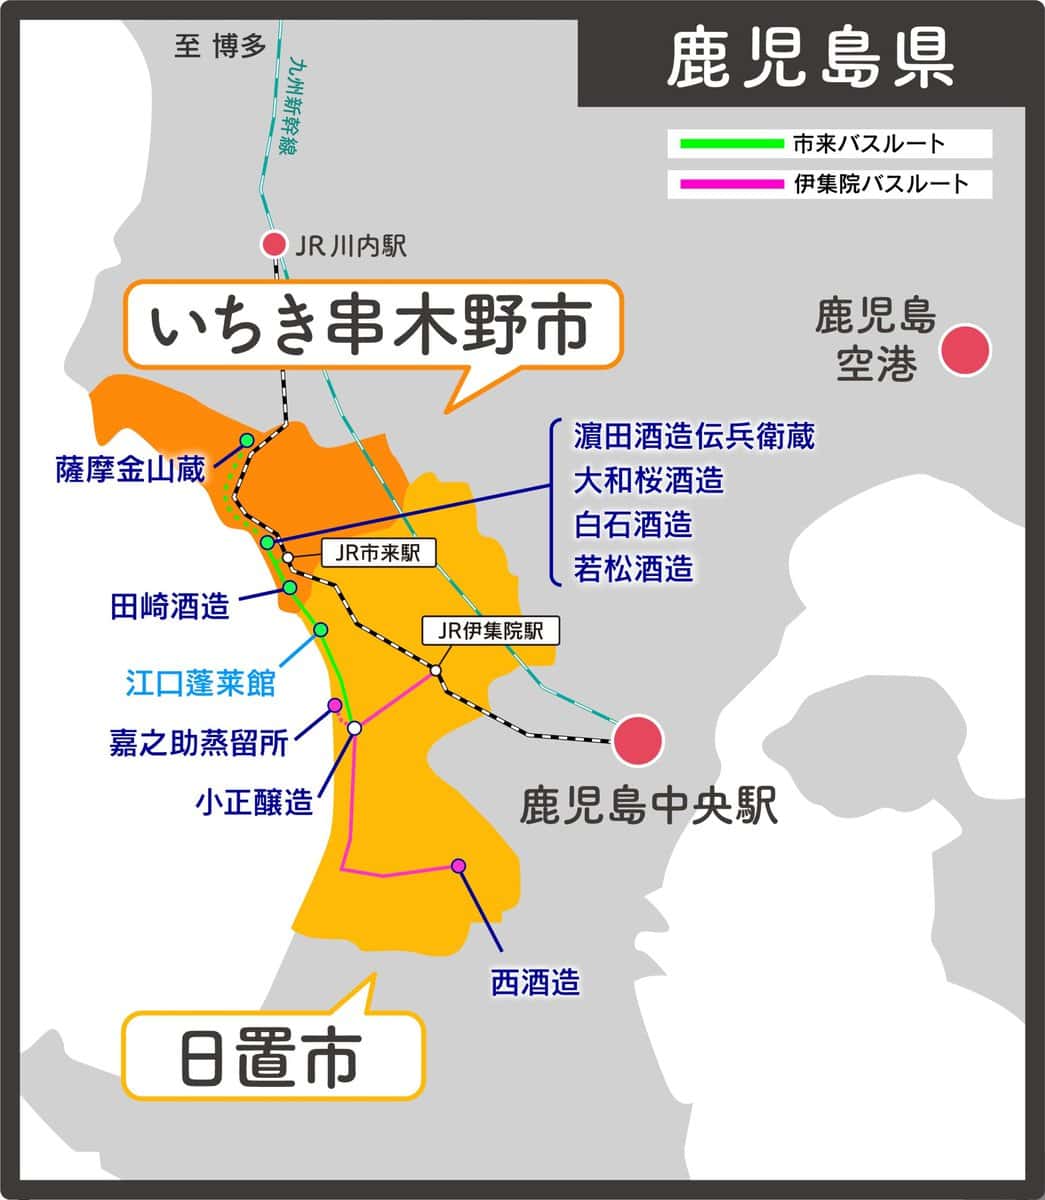 「焼酎ツーリズムかごしま2024」の舞台となる鹿児島県いちき串木野市と日置市は、焼酎メーカーの多い鹿児島県でも特に蔵元が集まっている焼酎のまち。